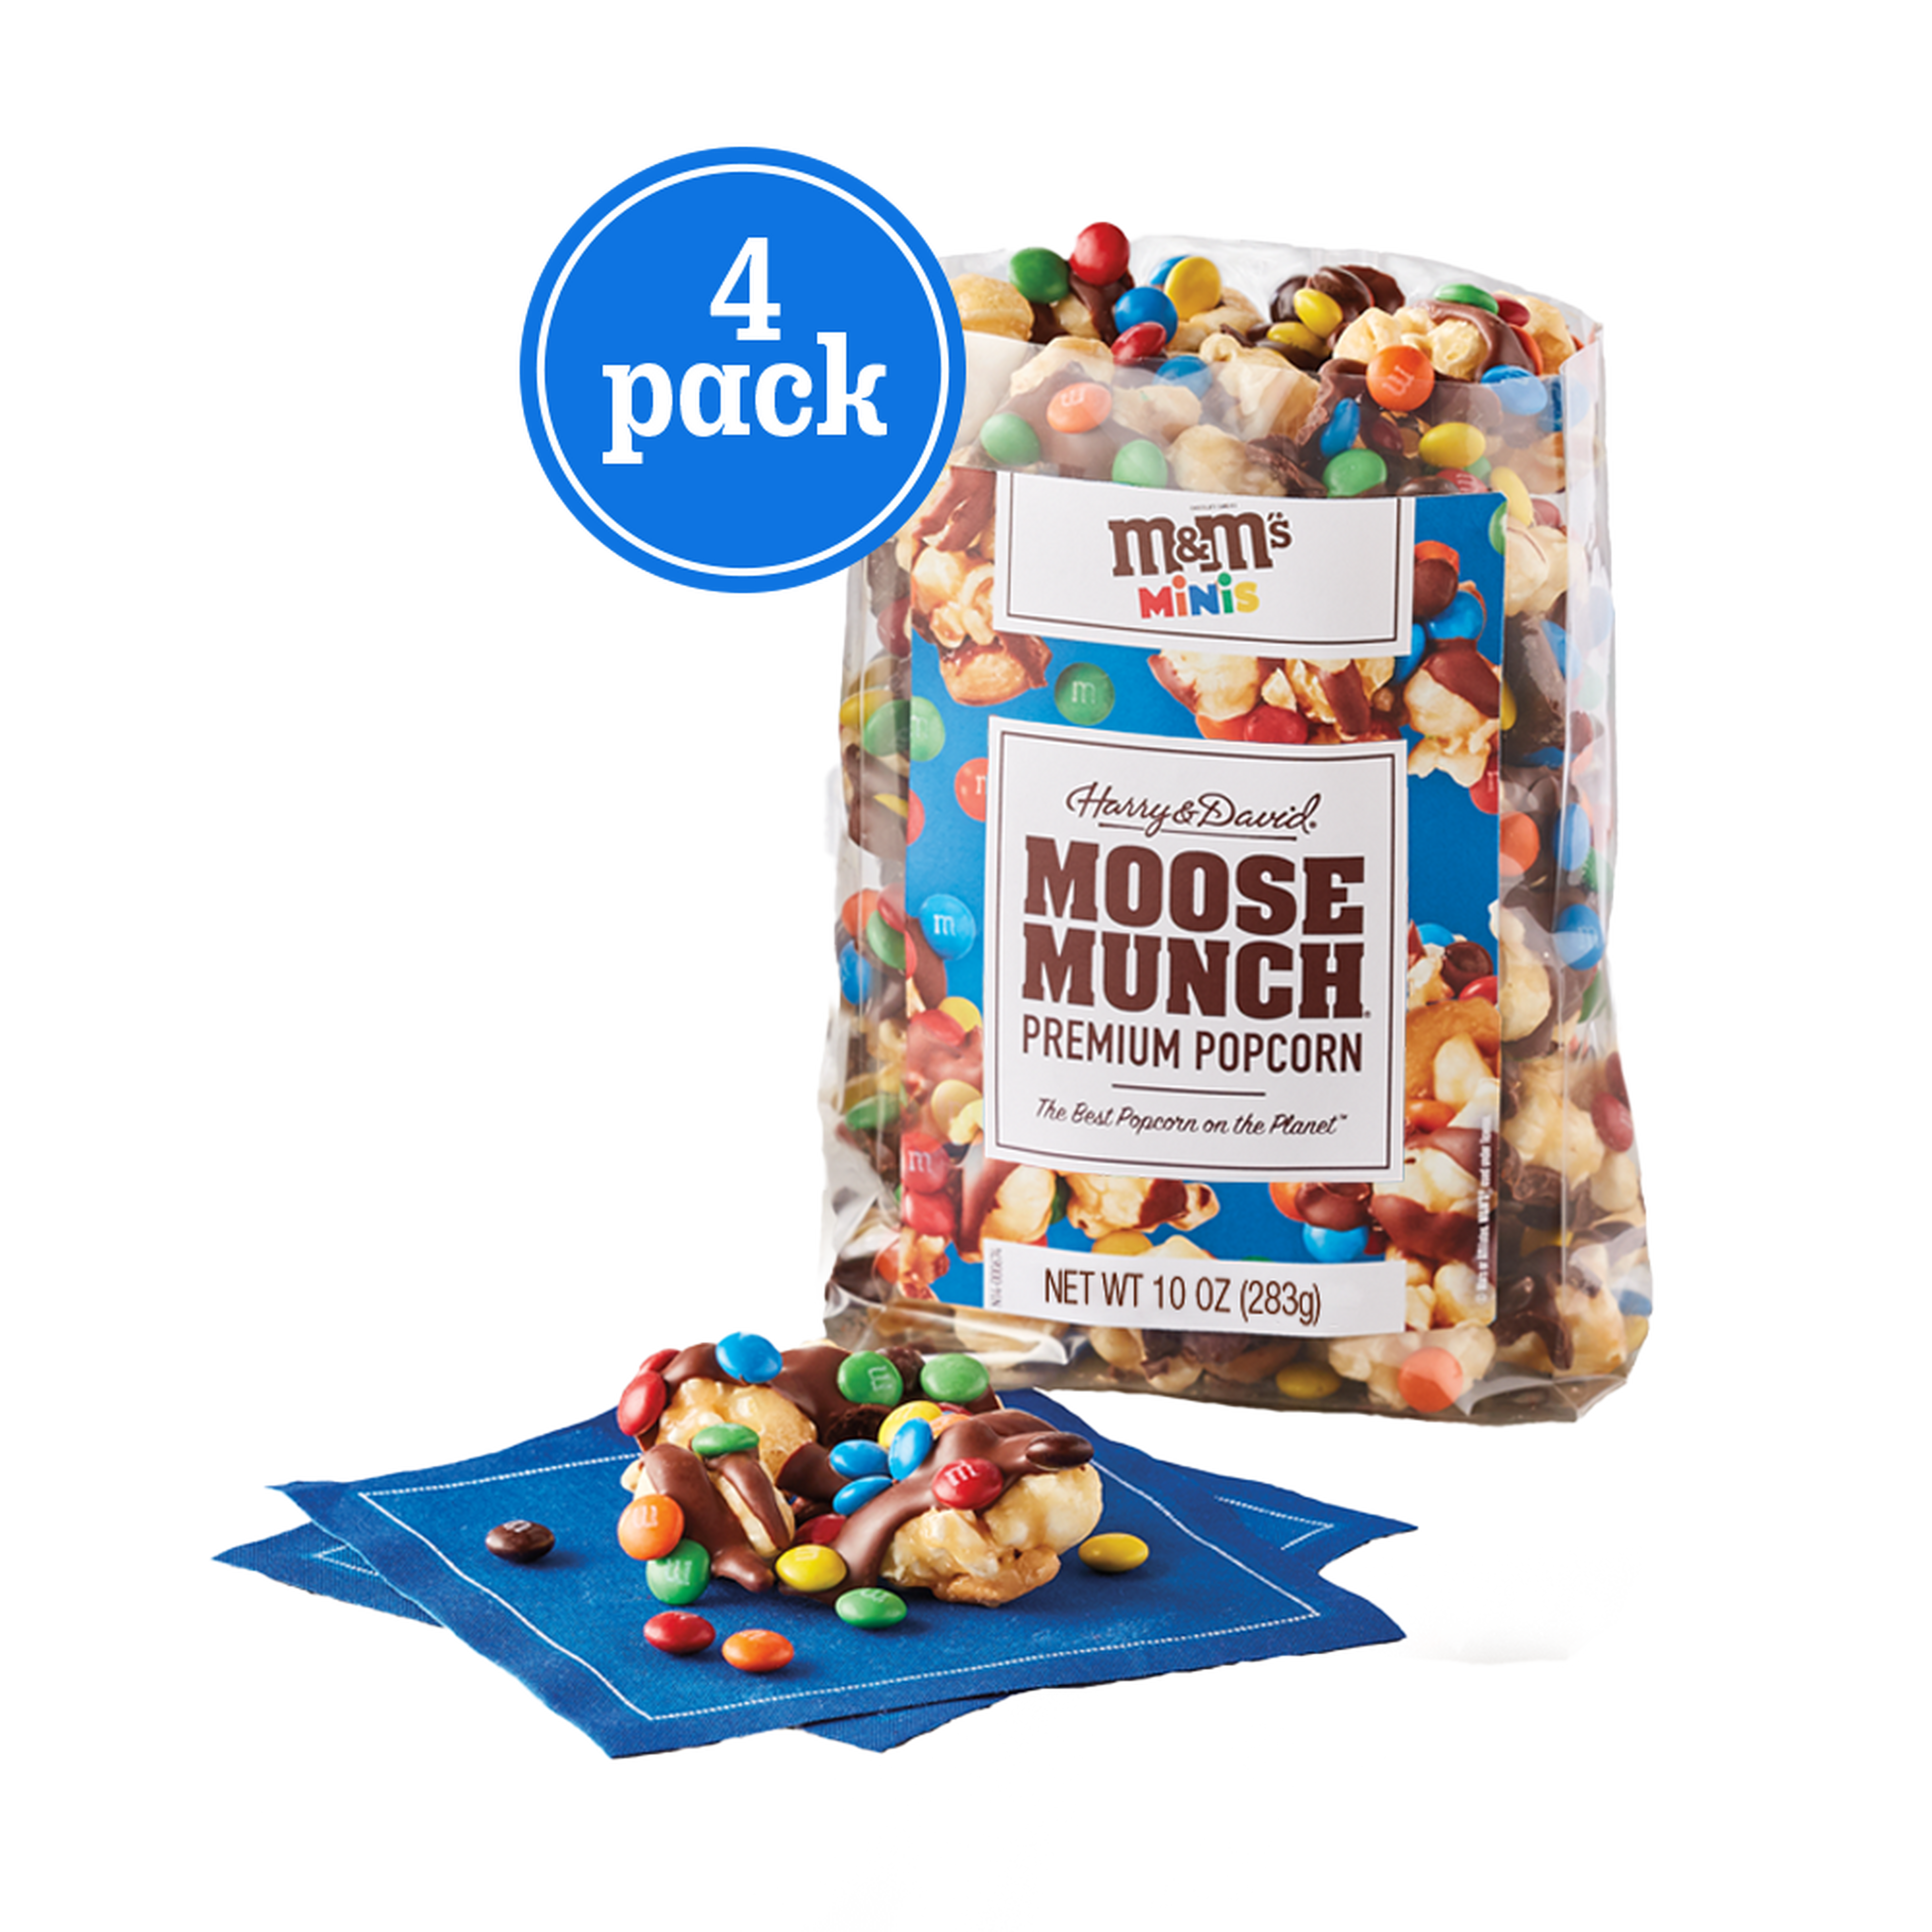 Moose Munch Premium Popcorn with M&M'S Minis 4 Pack 1